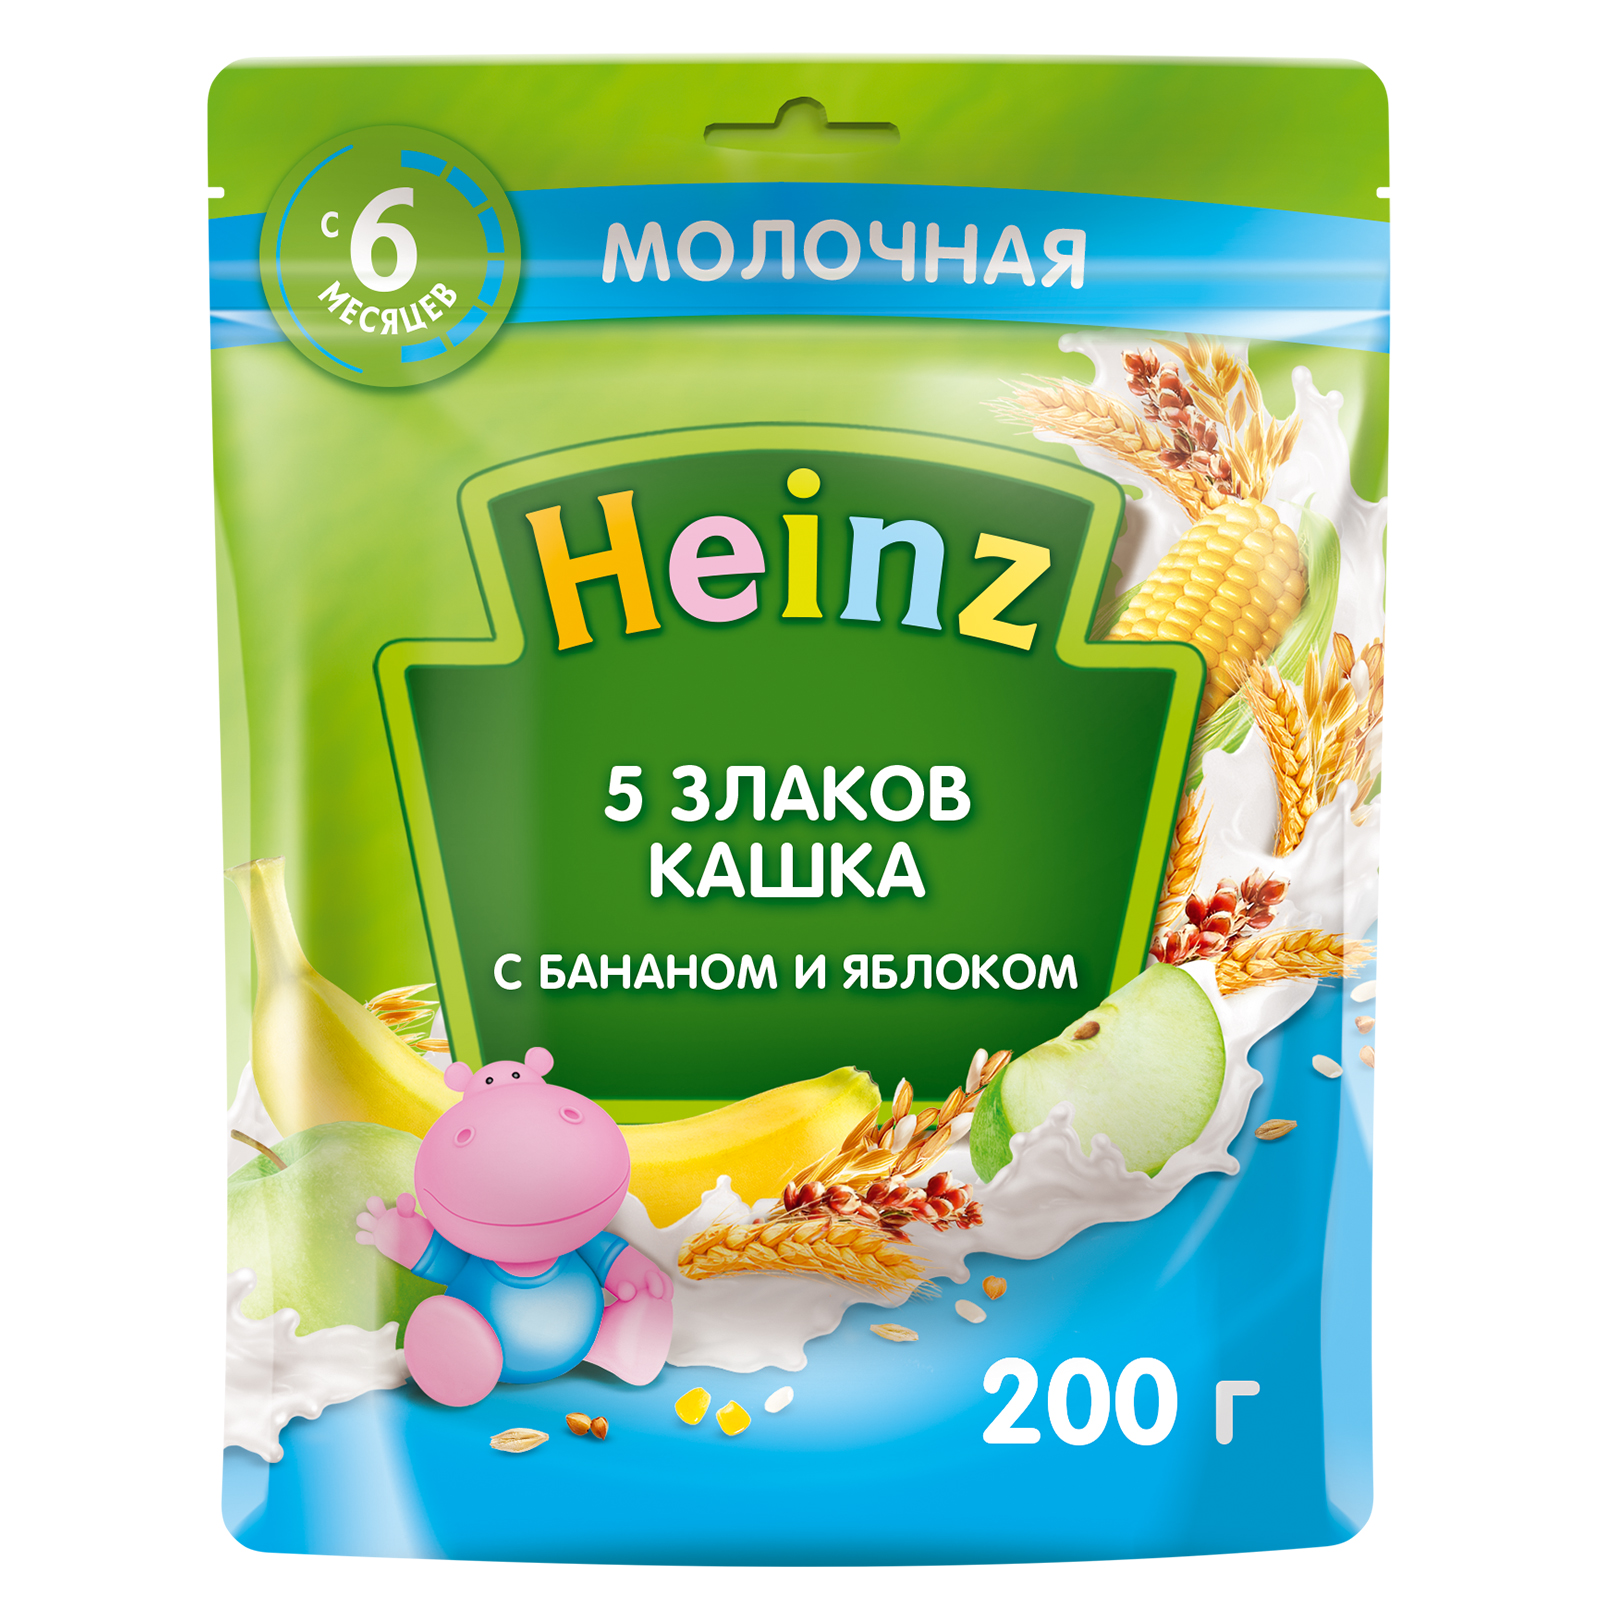 Кашка молочная Heinz 5 злаков Банан, яблоко с 6 месяцев 200 г кашка heinz 200мл молочная 5 злаков с омега 3 с 6 месяцев